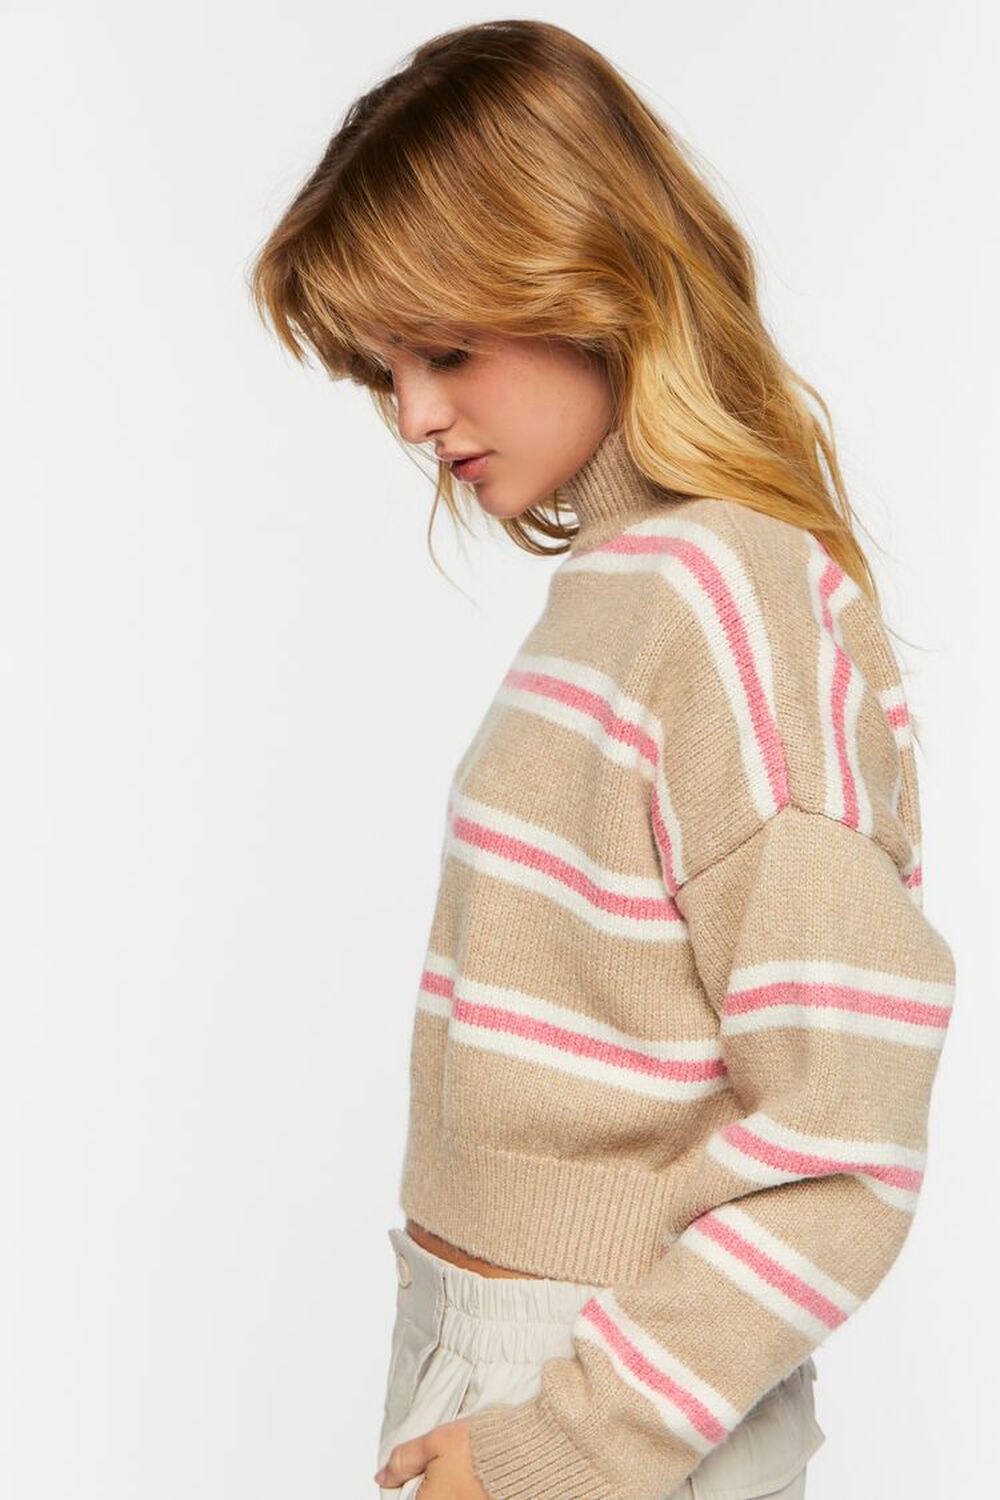 KHAKI/PEONY Striped Mock Neck Sweater, image 2